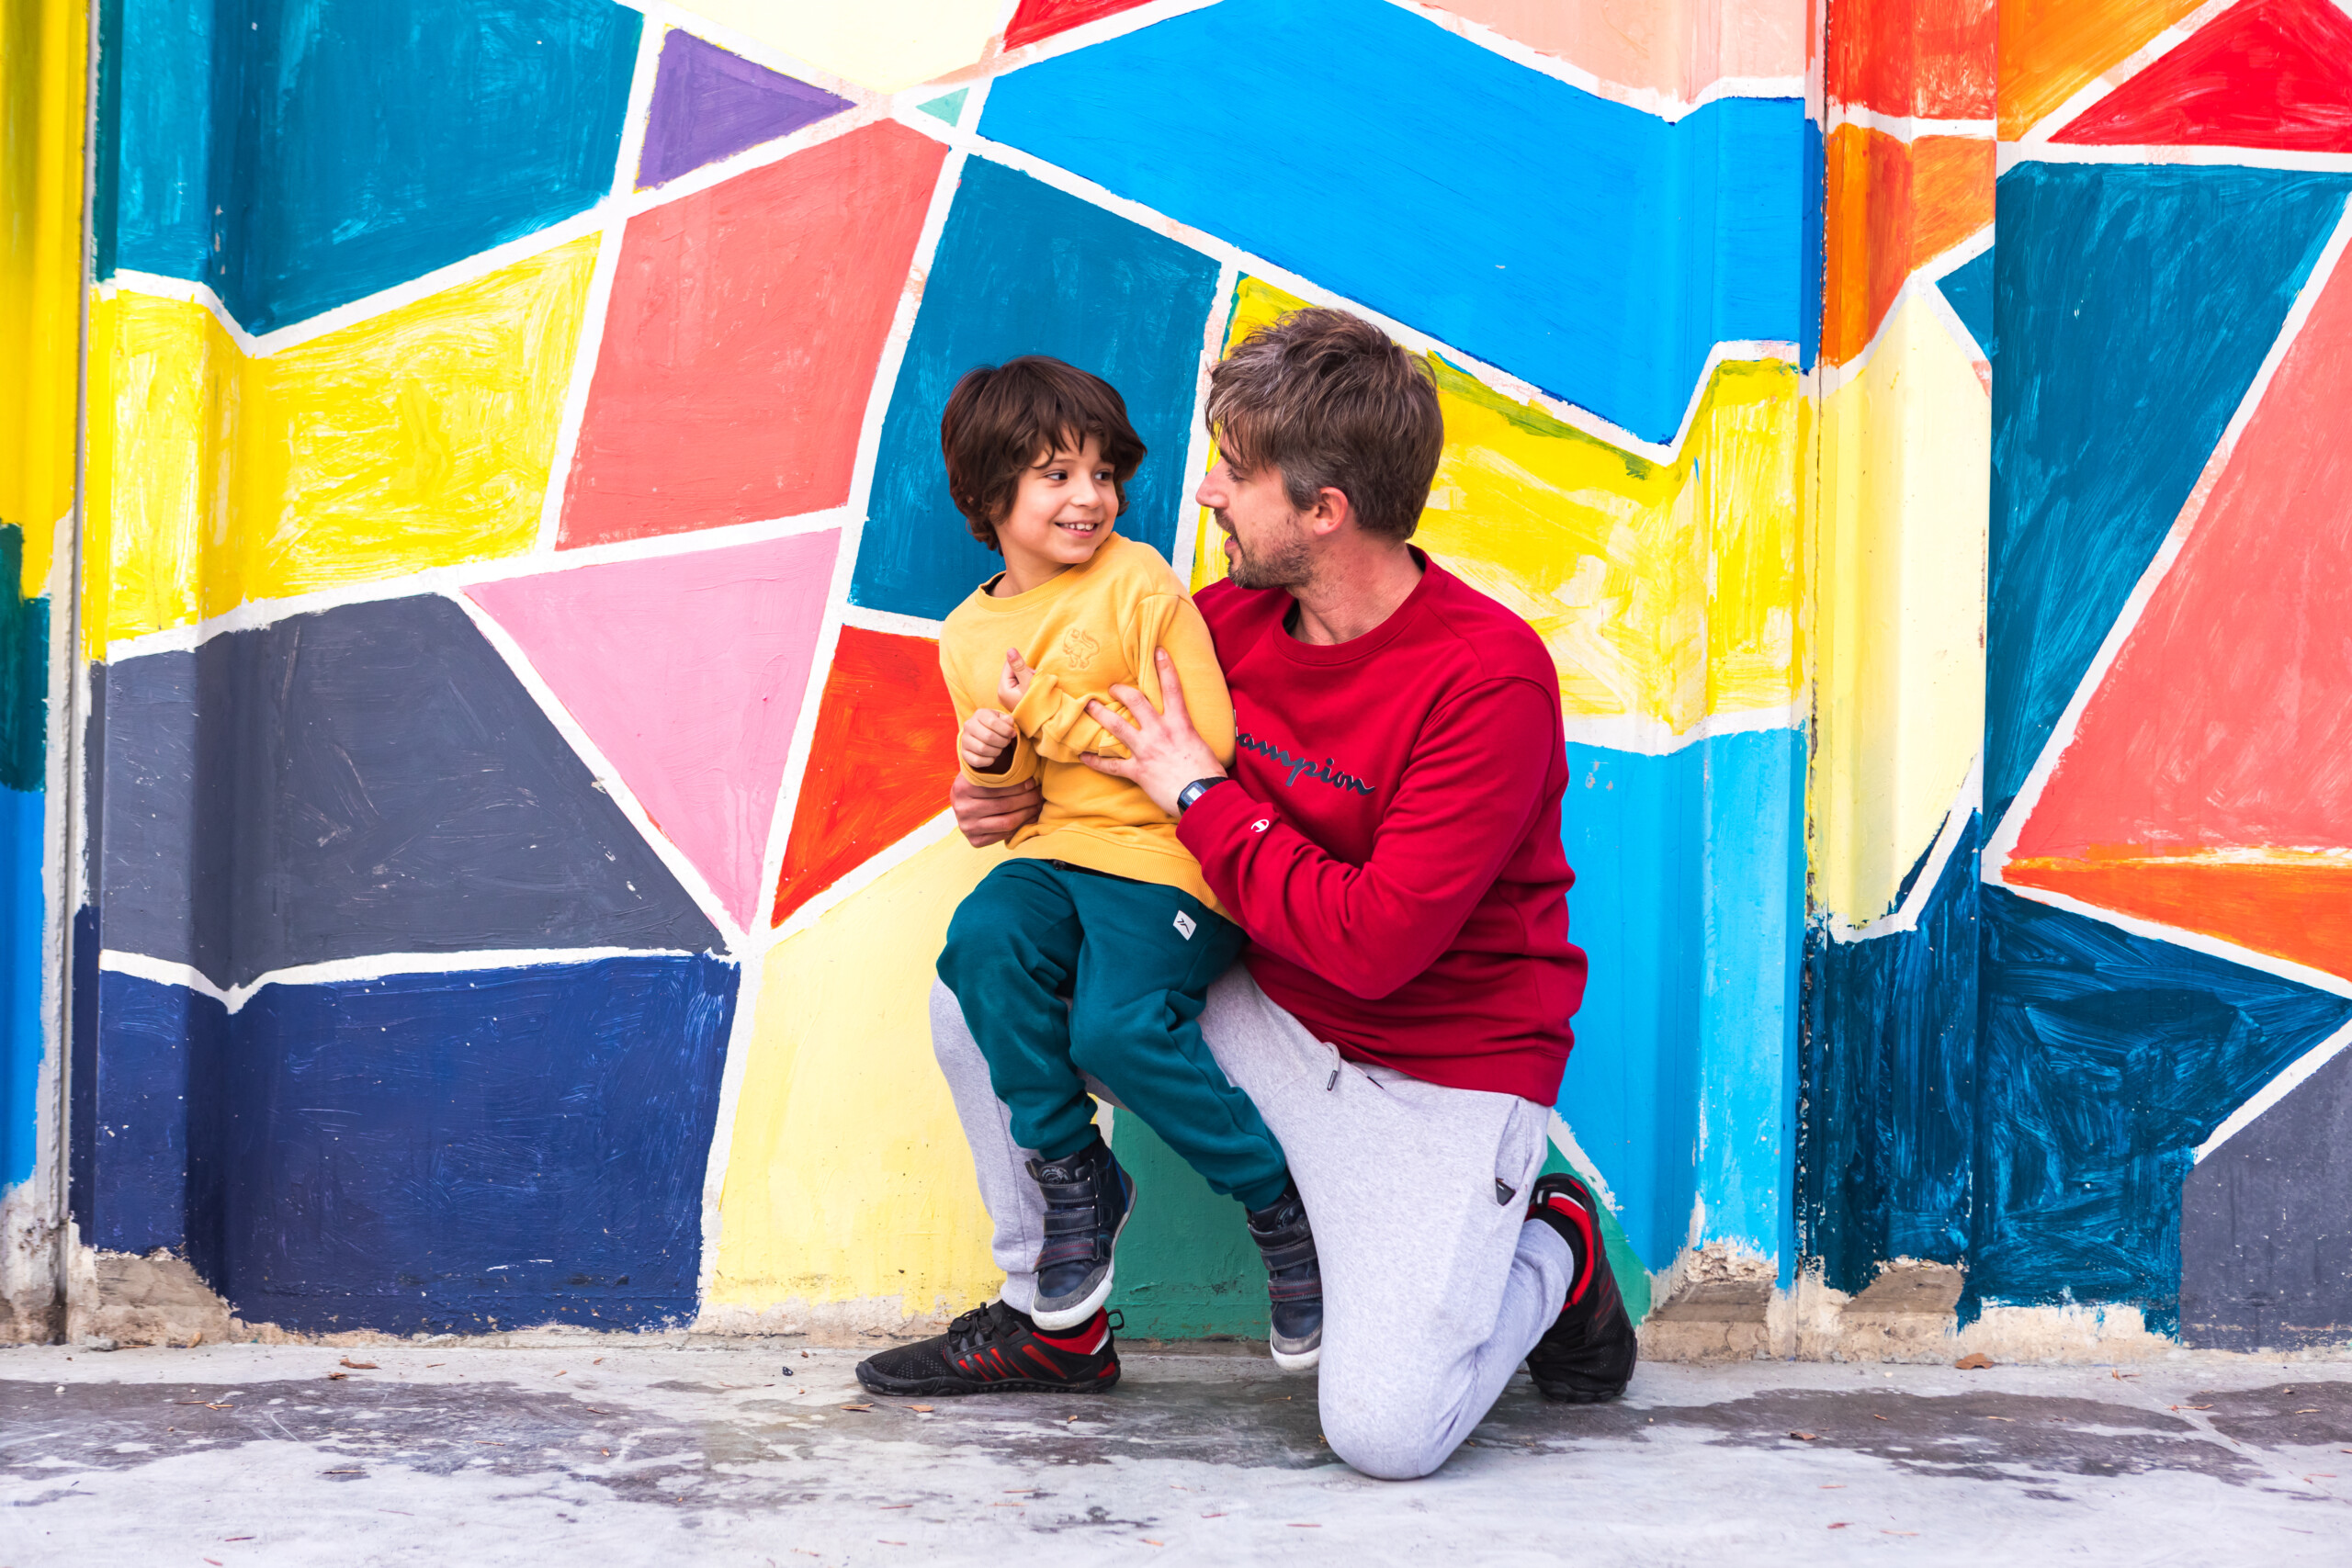 Un niño y un chico joven se miran sonriendo frente a una pared de colores